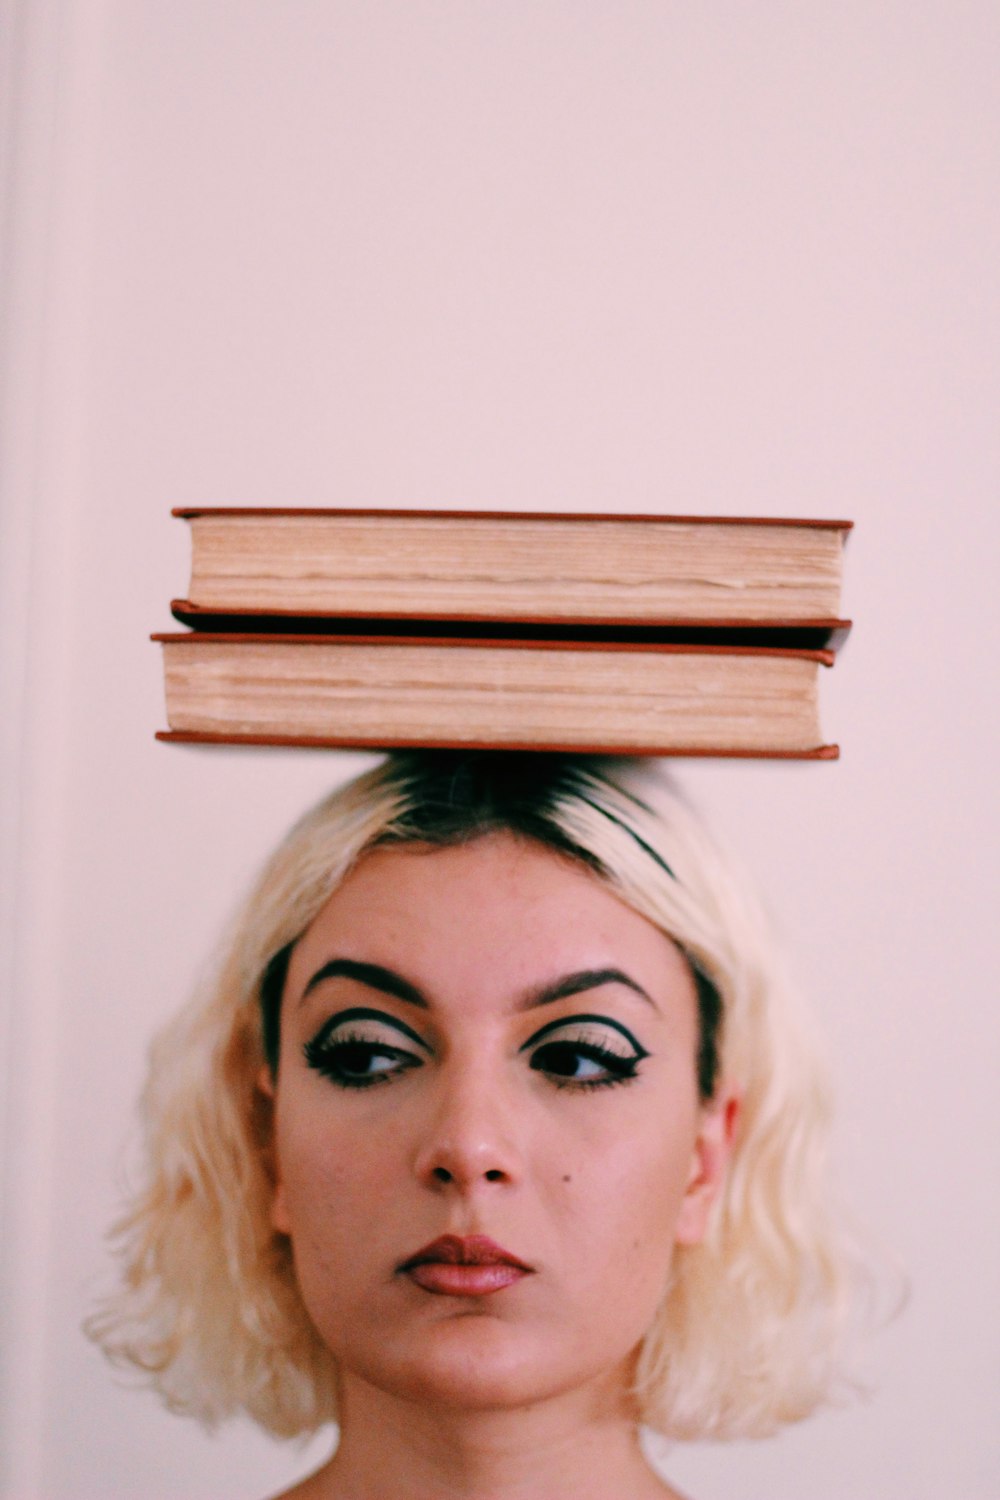 Dos libros en la parte superior de la cabeza de la mujer